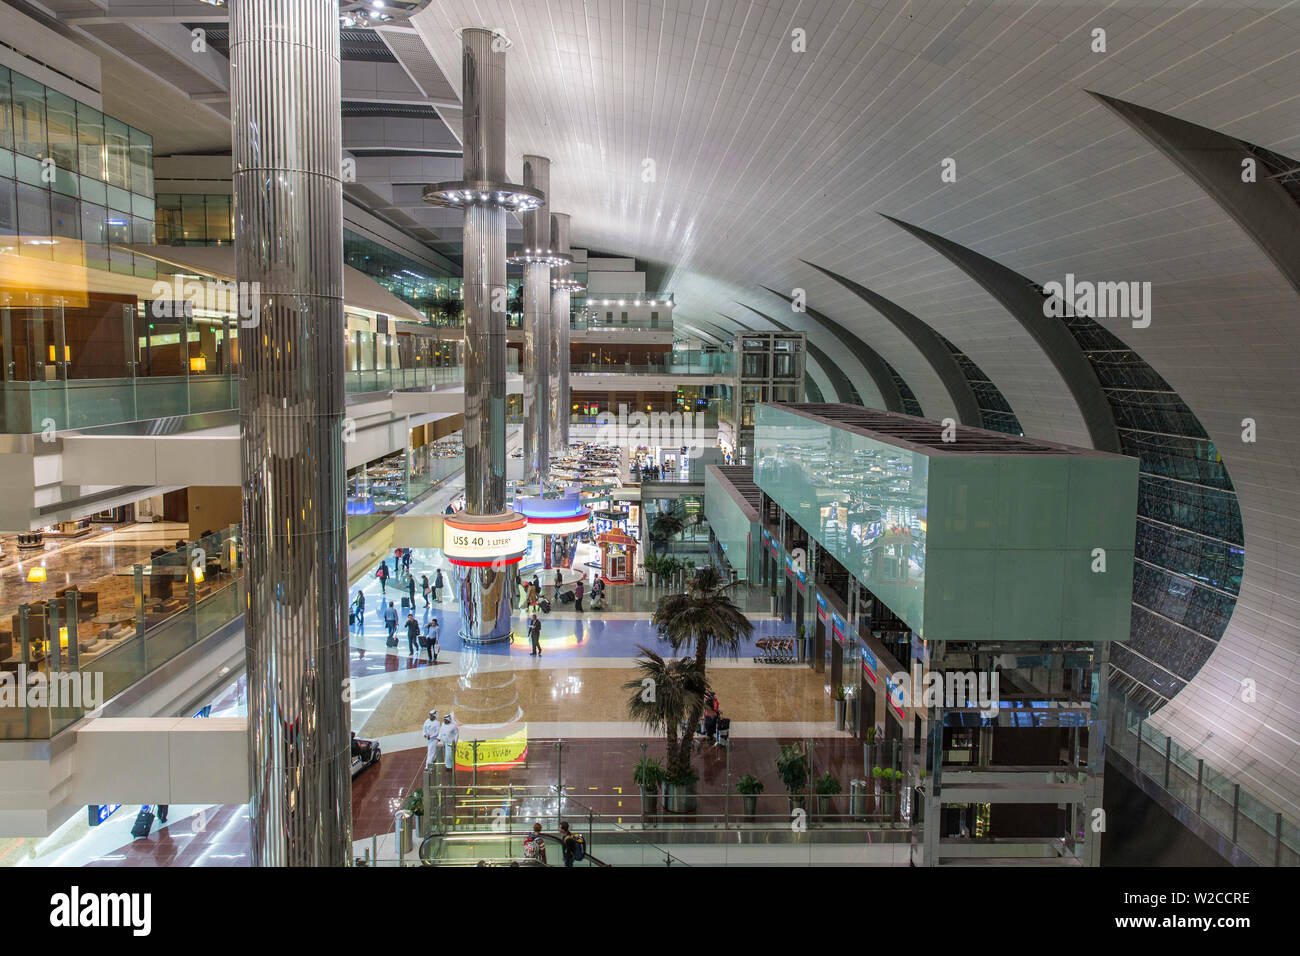 Concourse A, Terminal 3, Dubai Airport Stock Photo